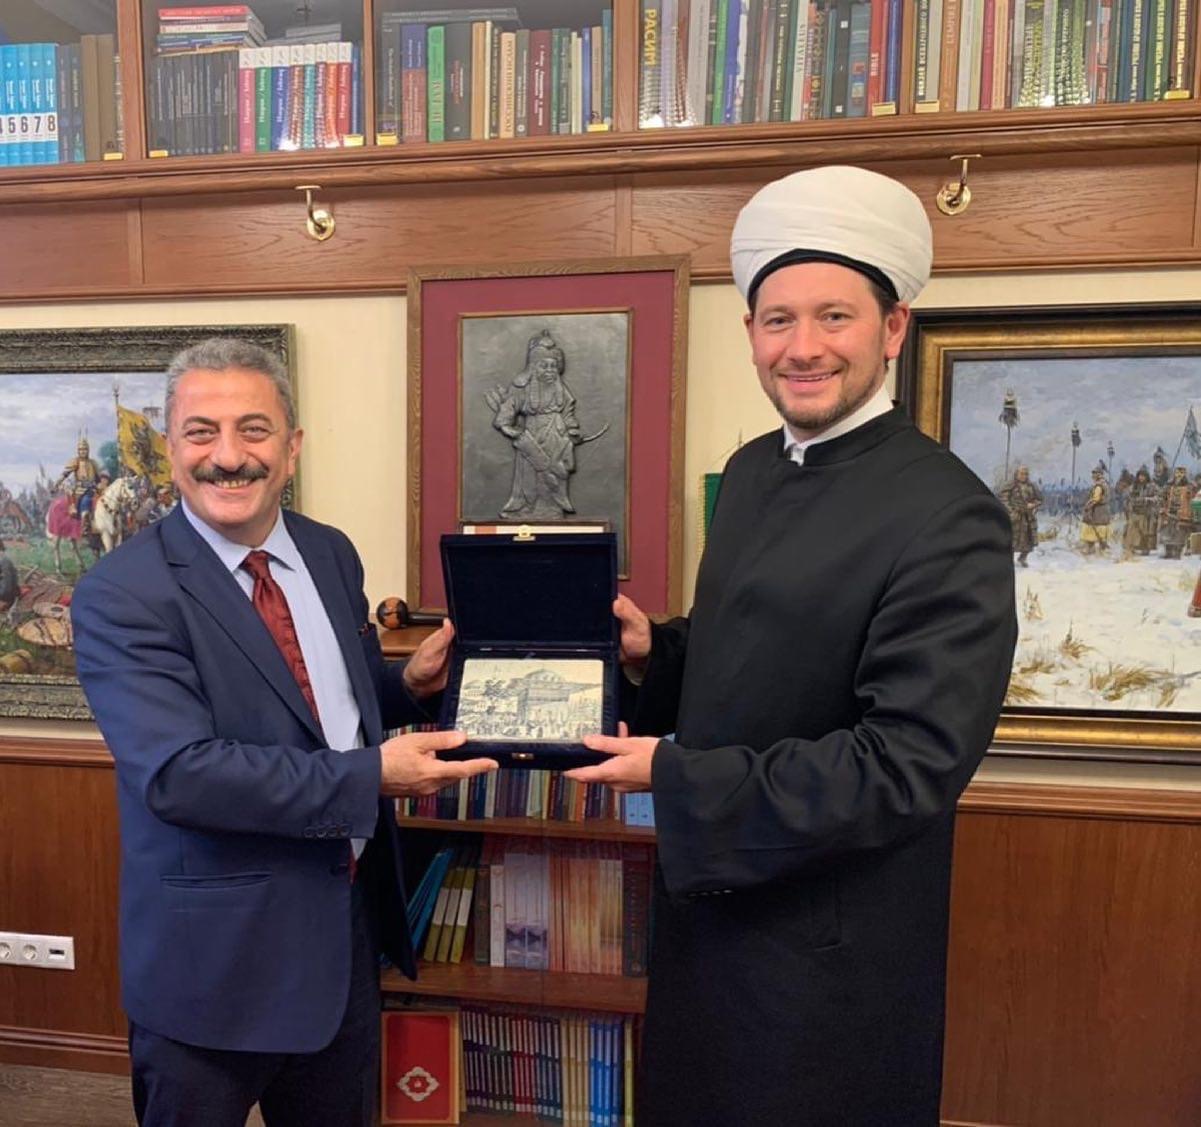 Damir Mukhetdinov: Сегодня встретился в резиденции Духовного управления мусульман РФ с делегацией Турецкой Республики